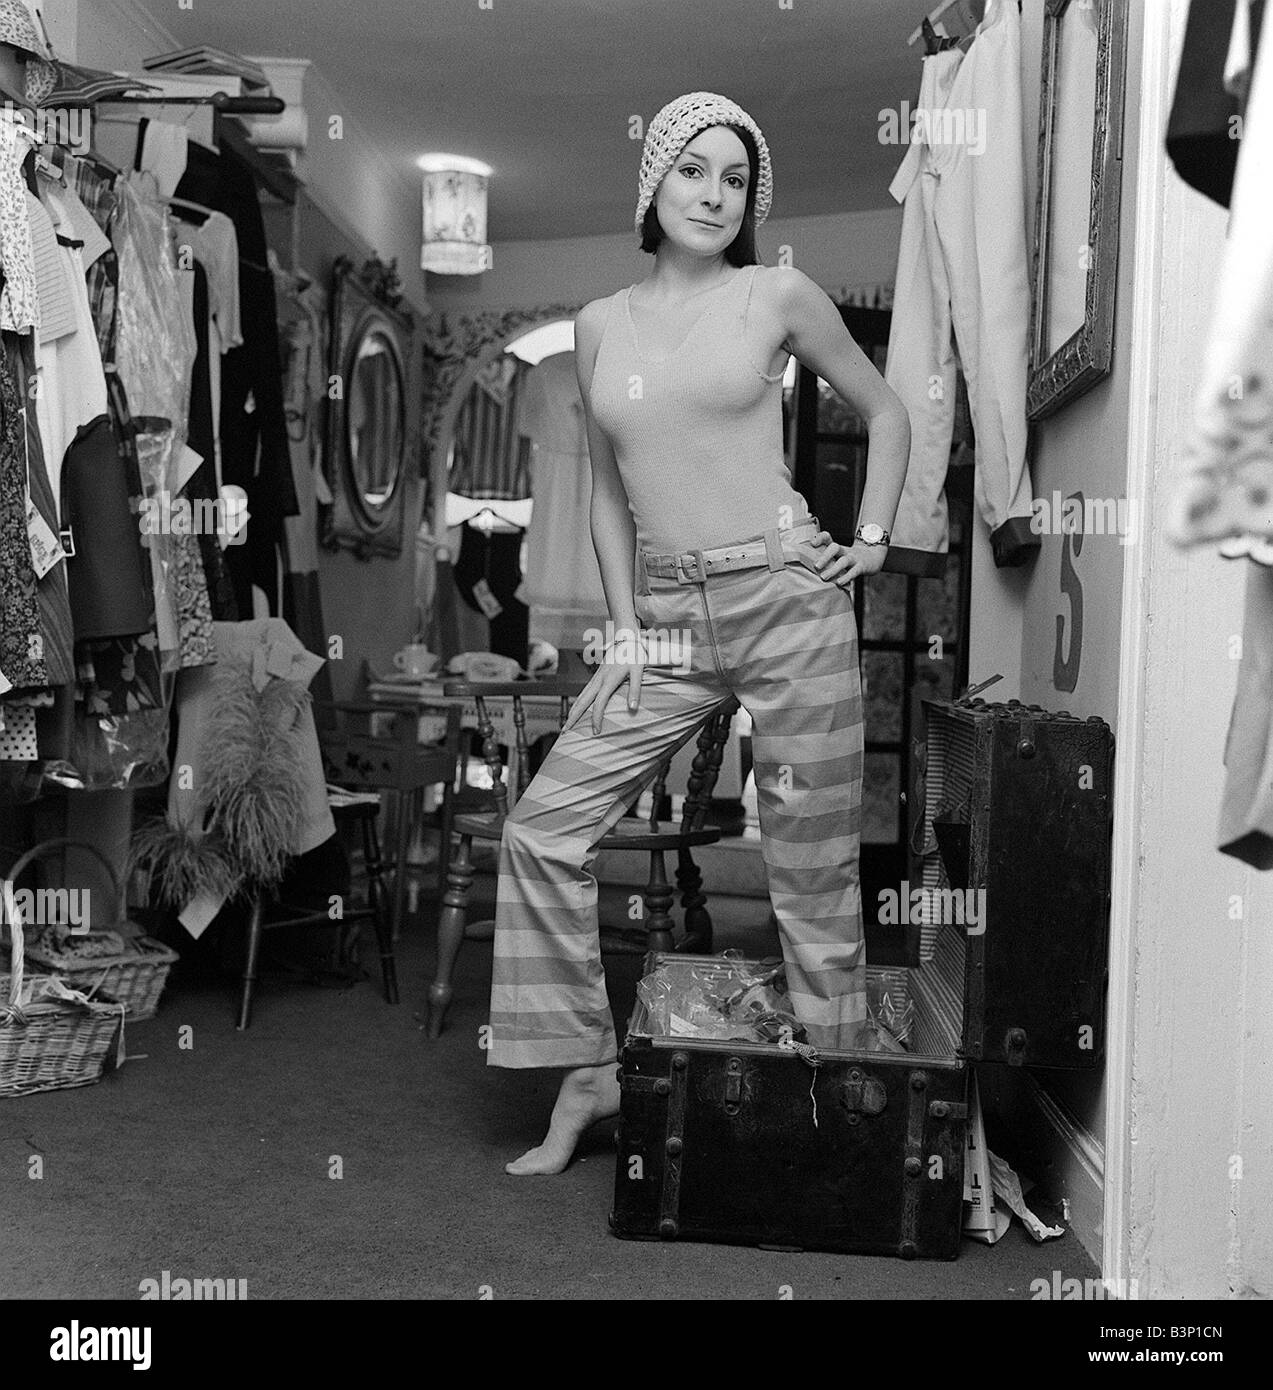 Swinging Sixties Fashion Juillet 1965 Jackie Cryer assis dans l'Épice n° 1 Boutique à Knightsbridge essayer de poser dans des tenues sur le pantalon à rayures et un cavalier portant un chapeau également entouré par des rails de vêtements Banque D'Images